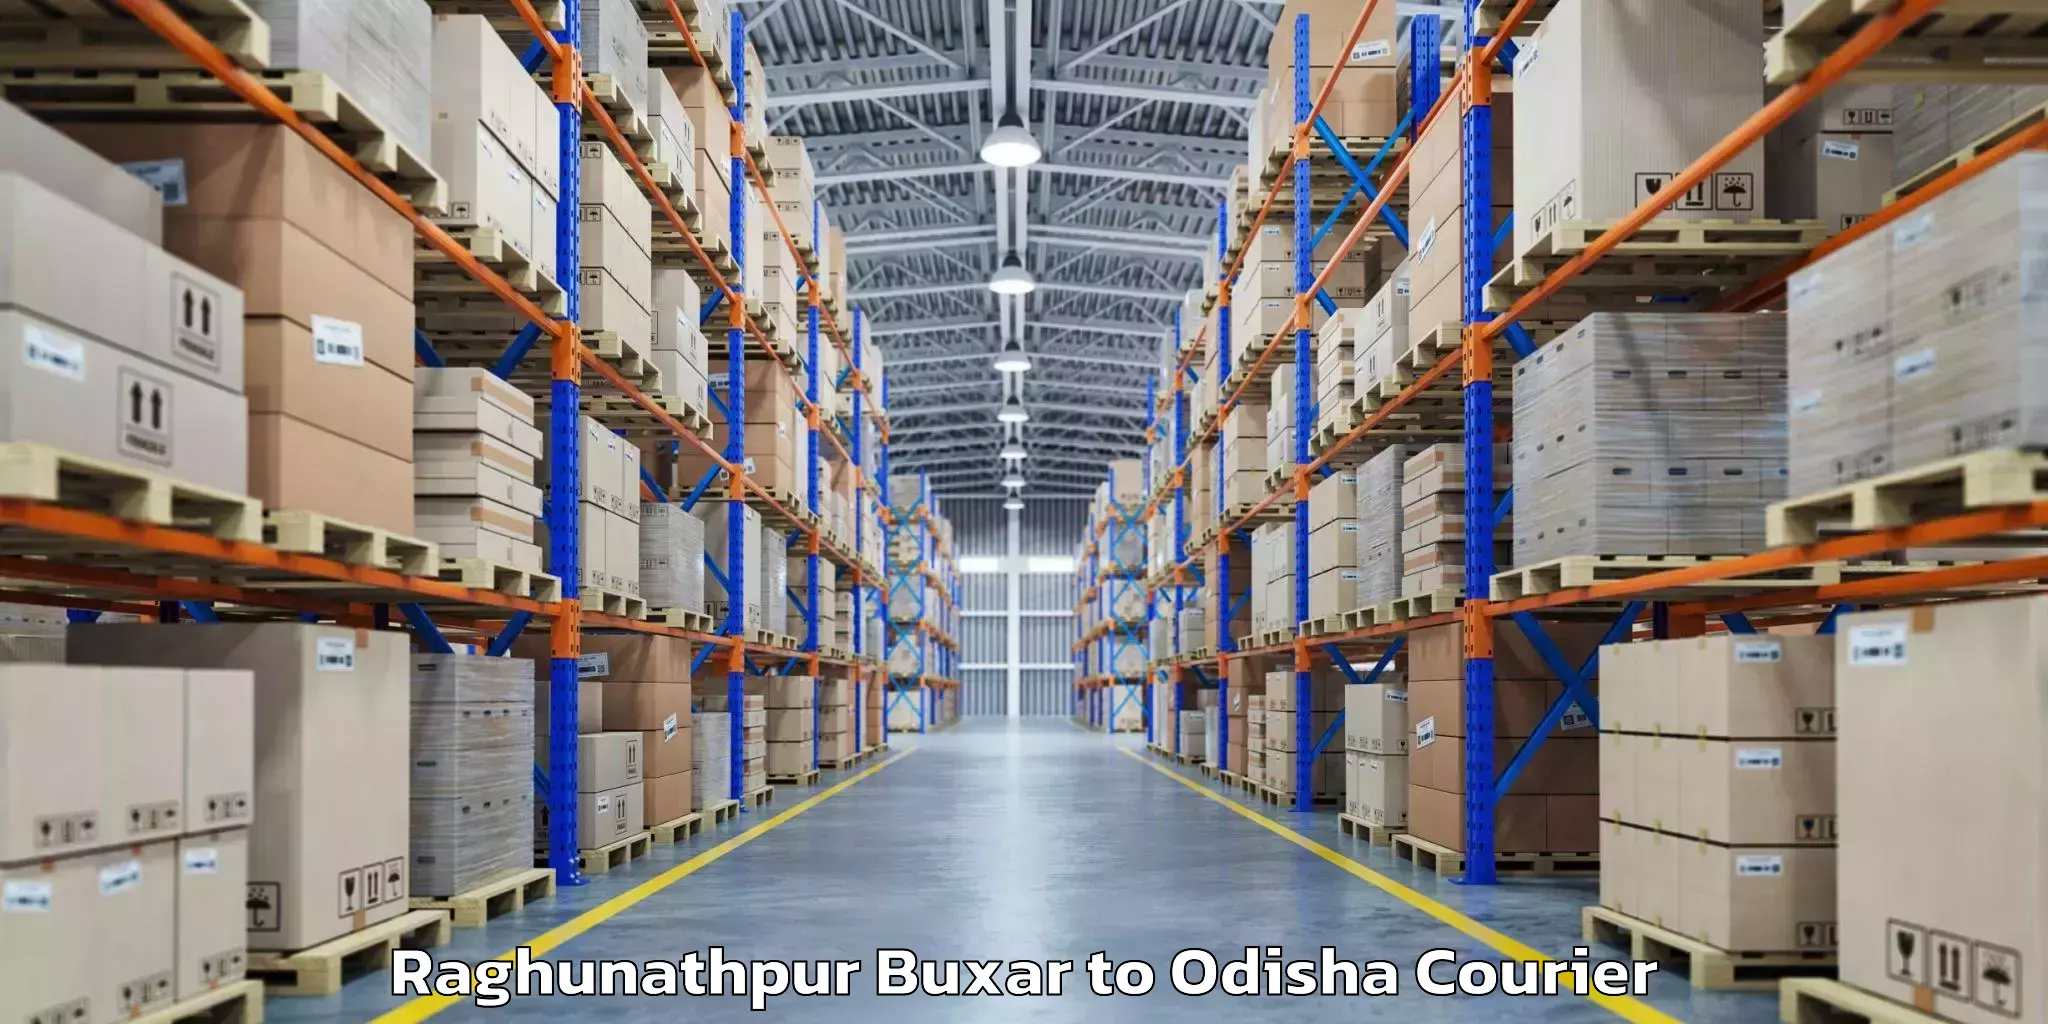 Global baggage shipping Raghunathpur Buxar to Mahakalapada